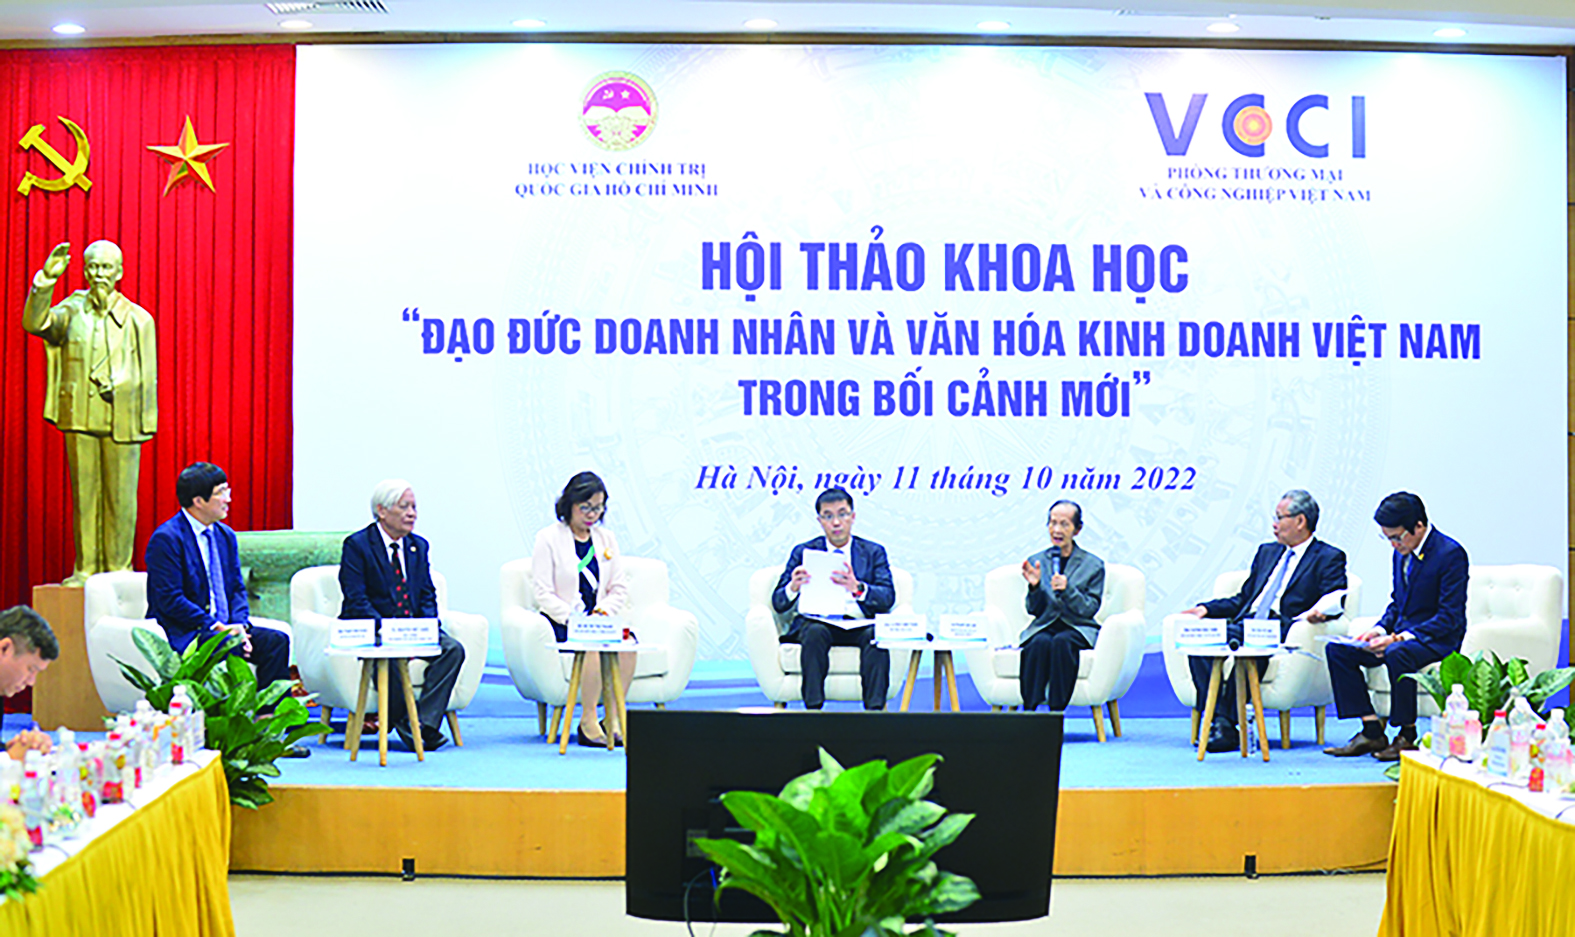  Chuyên gia kinh tế Phạm Chi Lan – Nguyên Phó Chủ tịchp/VCCI chia sẻ tại Hội thảo khoa học “Đạo đức doanh nhân và văn hoá kinh doanh Việt Nam trong bối cảnh mới”